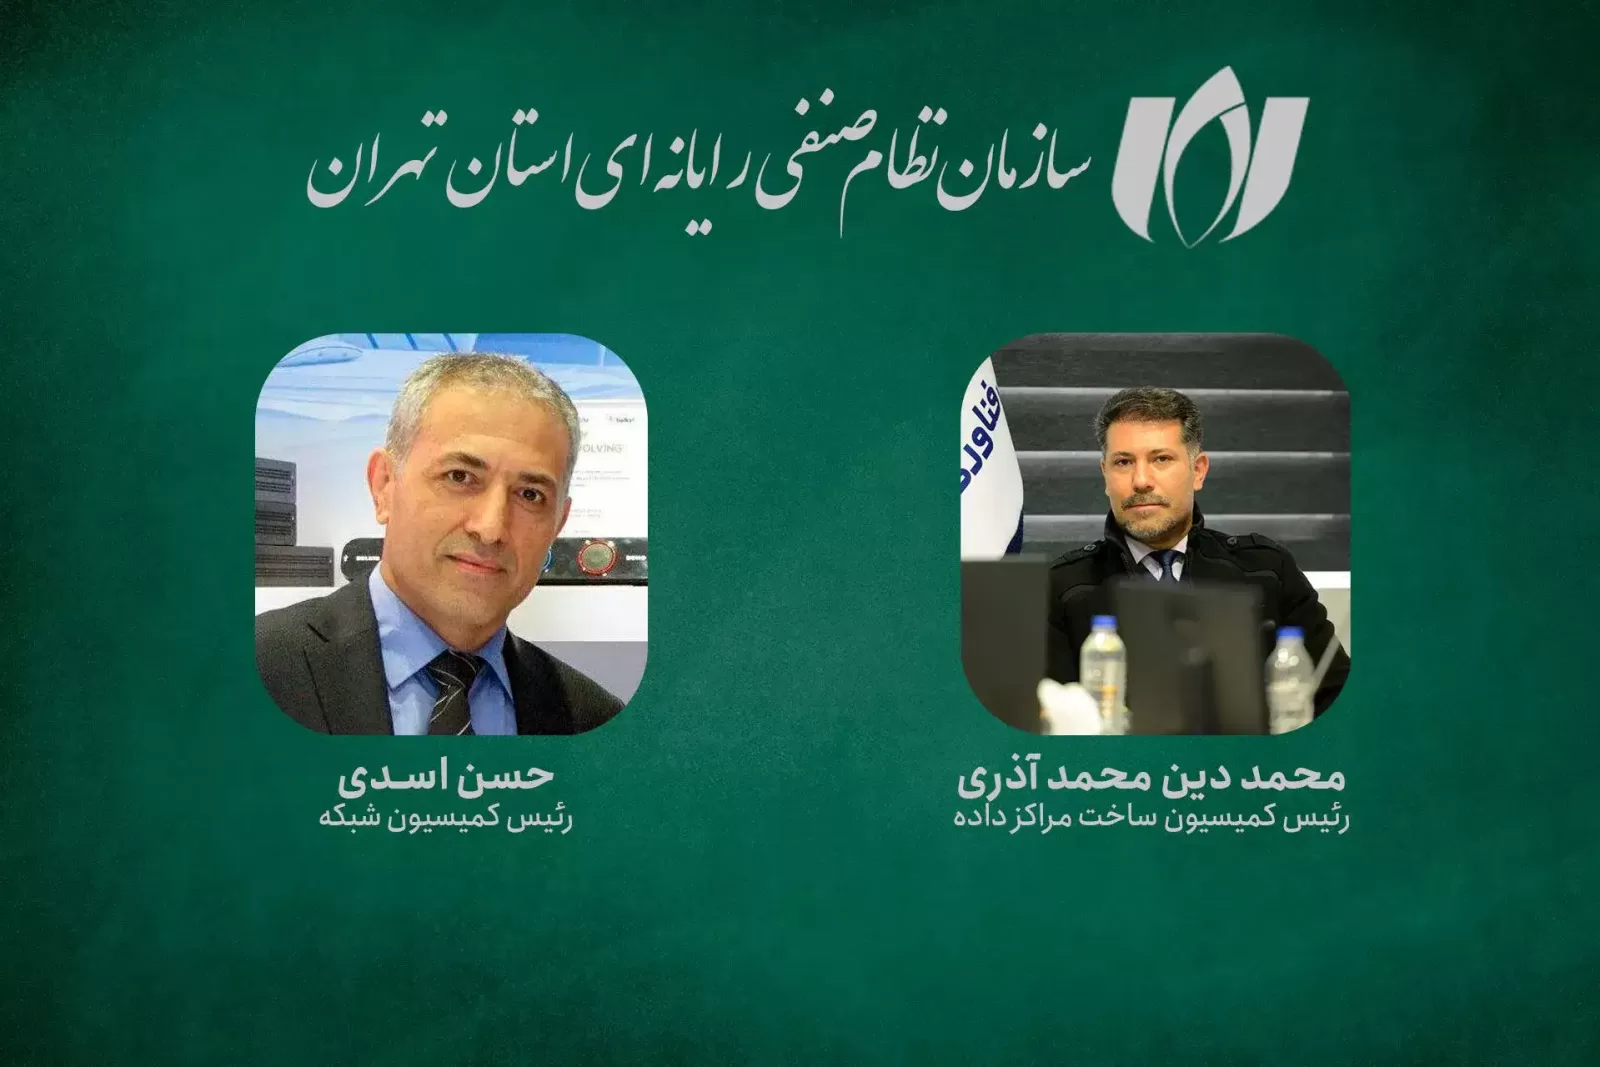 آقایان محمد دین محمد آذری و حسن اسدی به ترتیب به عنوان رئیس کمیسیون ساخت مراکز داده و رئیس کمیسیون شبکه